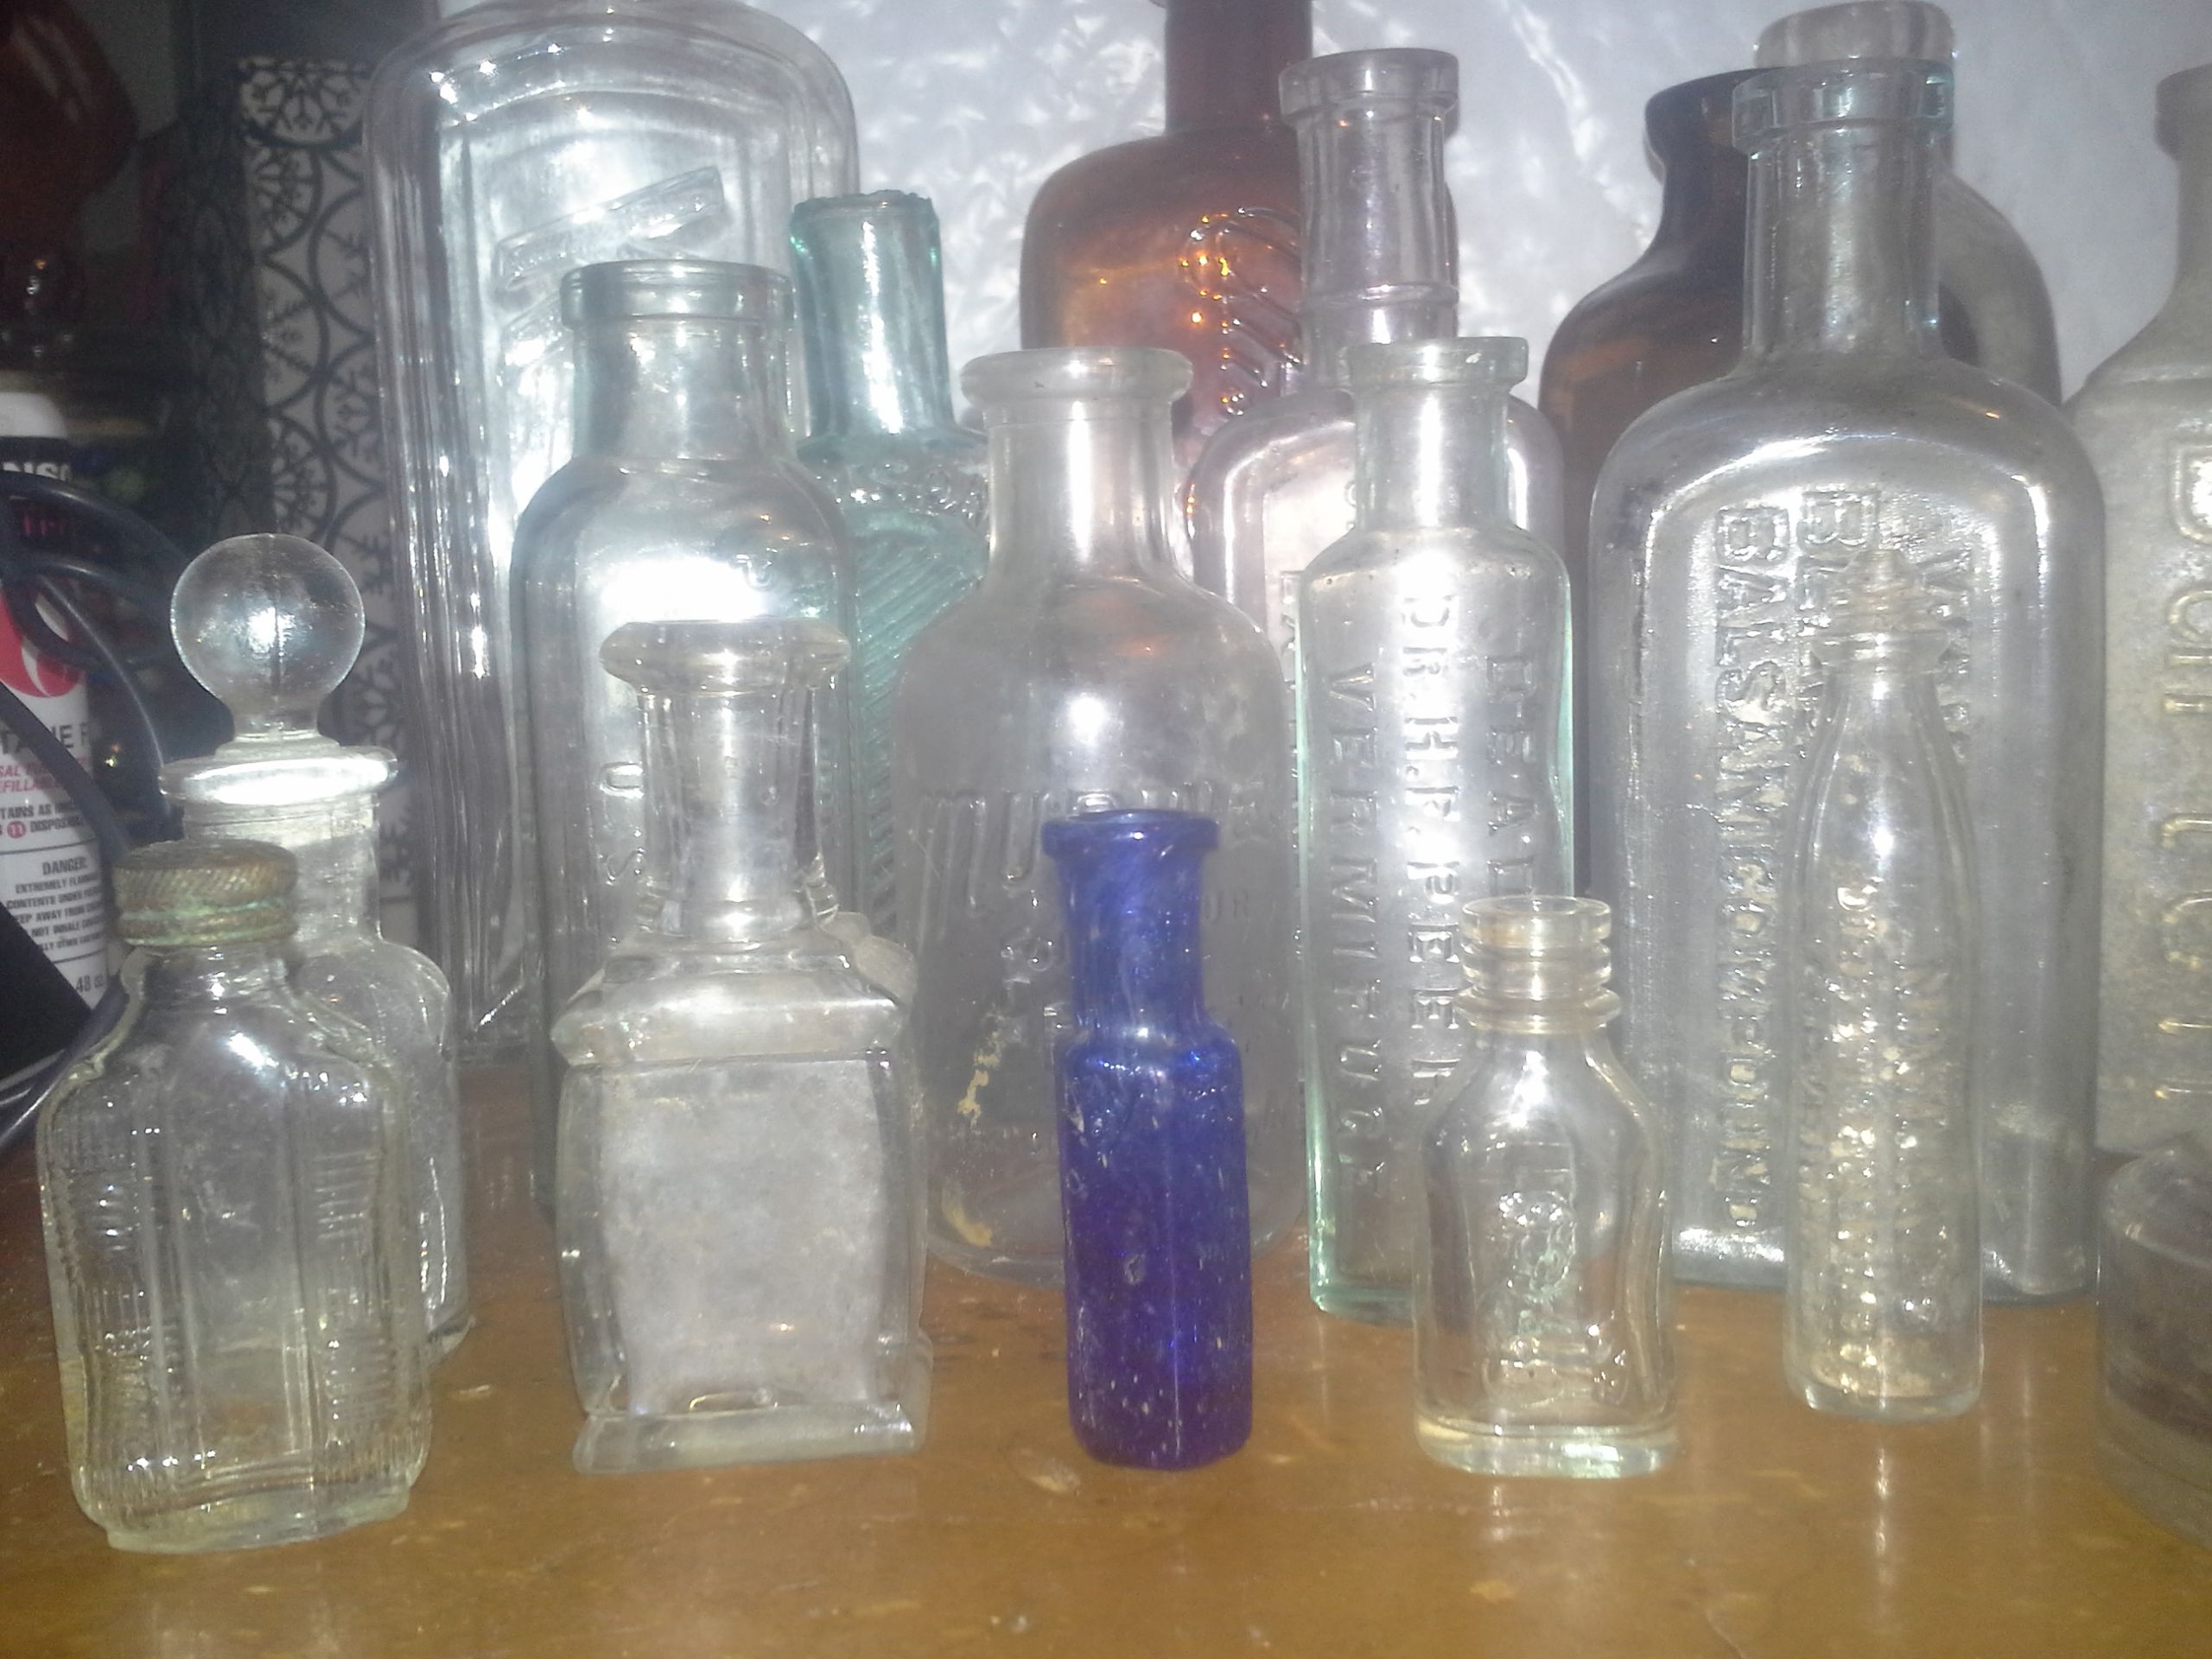 27 - Antique Bottles - Vintage Old bottles